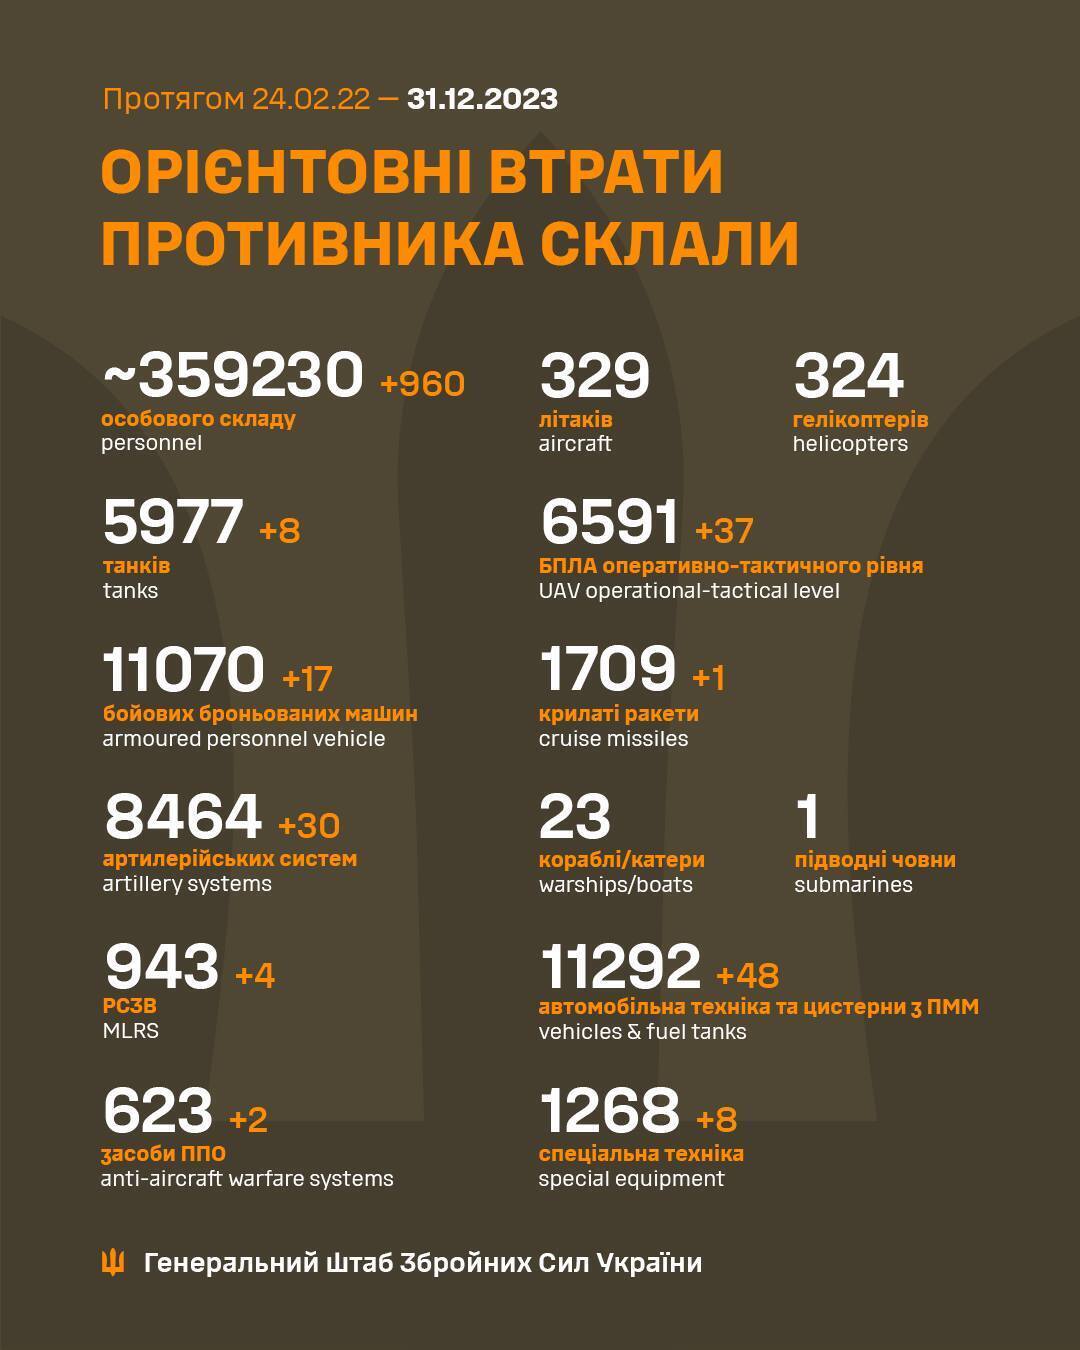 Минус 359 тыс. живой силы и 11 тыс. ББМ: Генштаб обновил данные о потерях врага в Украине на конец года